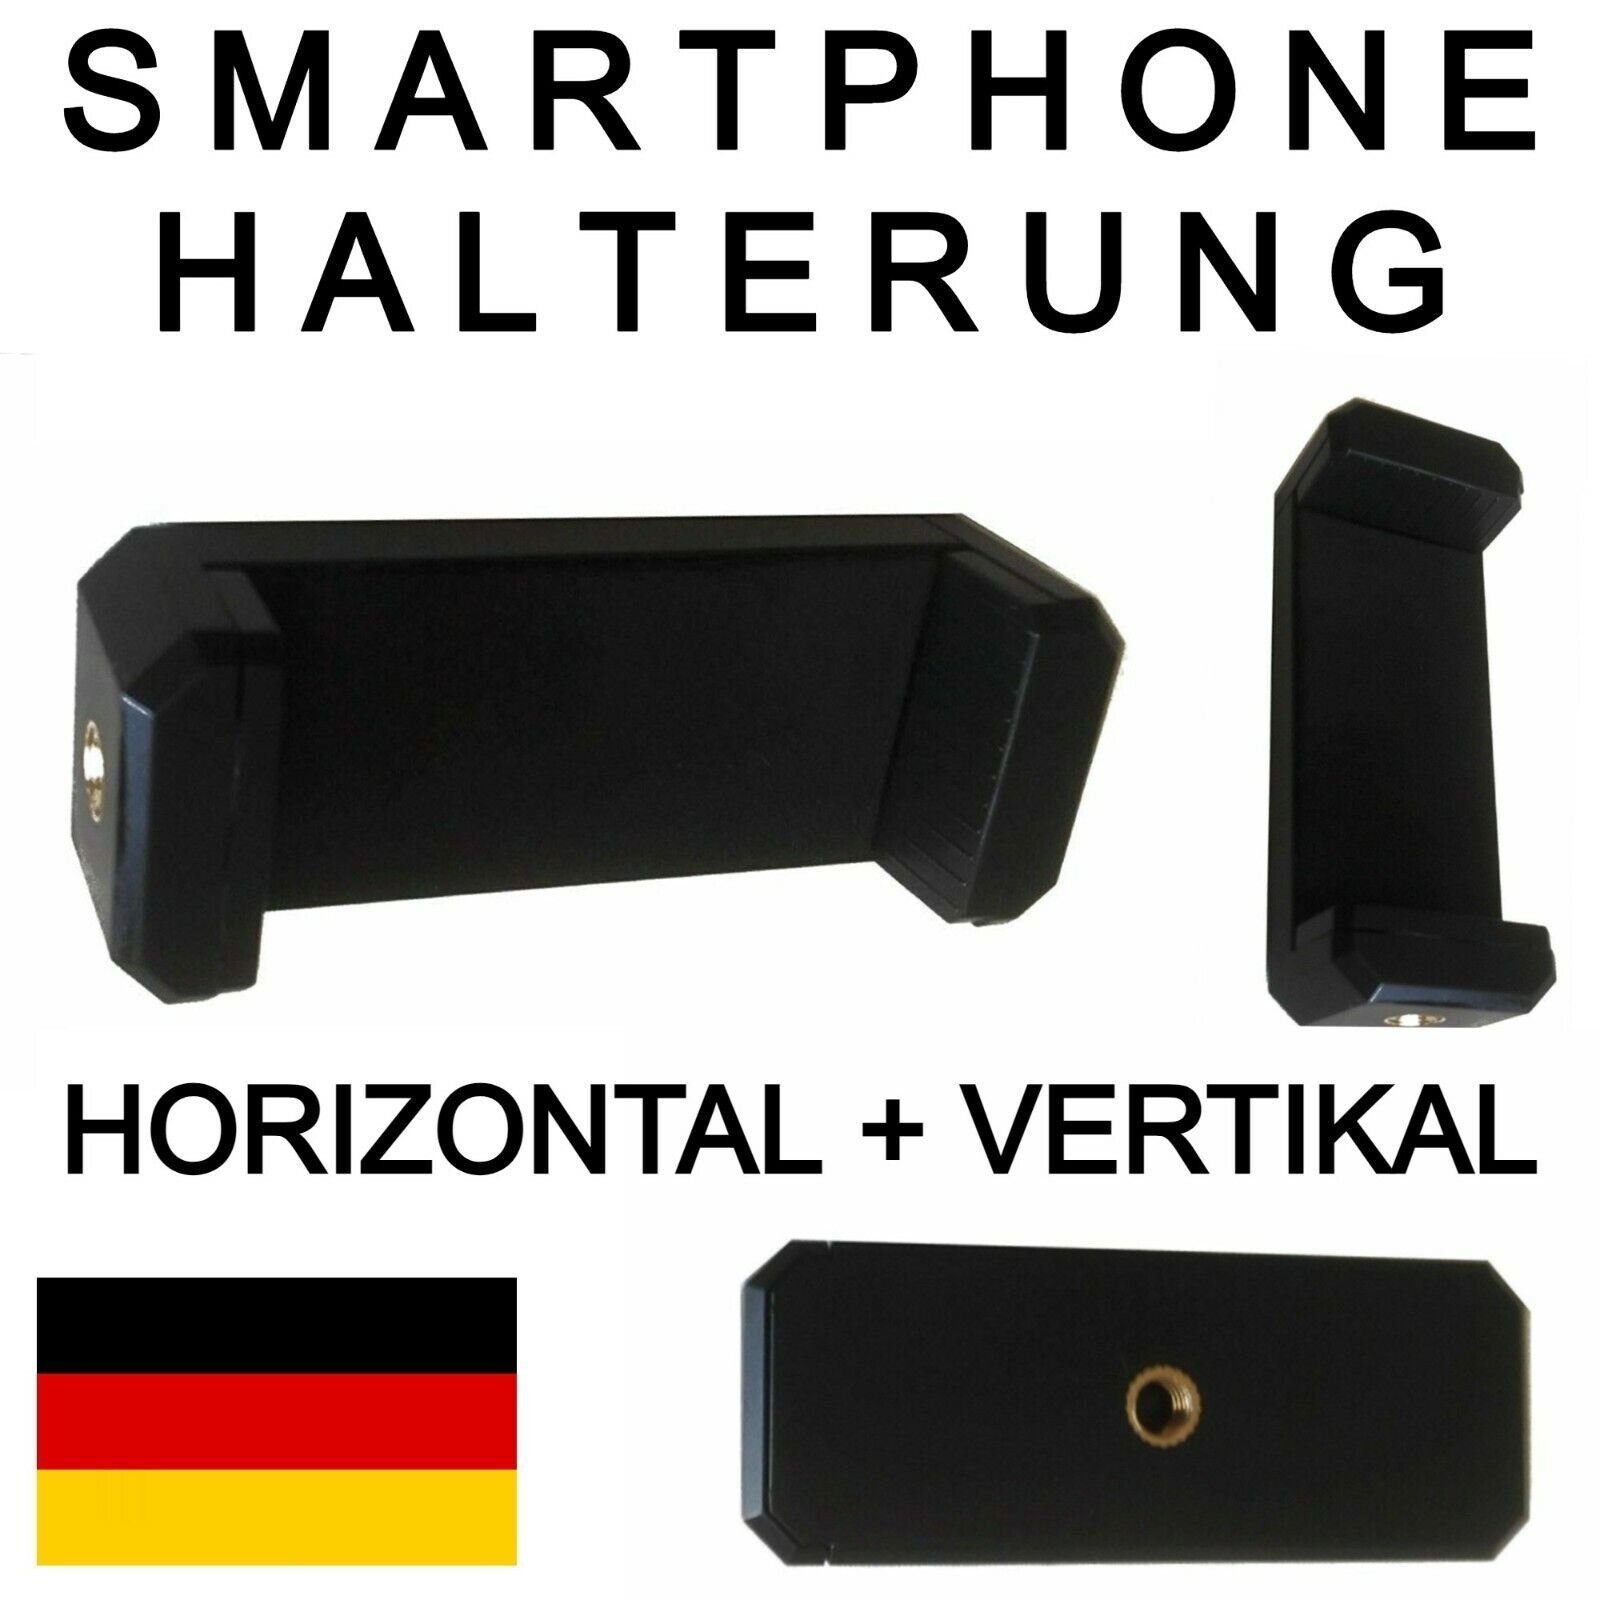 TronicXL Universal Handy Halterung Stativ Adapter Aufsatz für Smartphone iPhone Kamerastativ